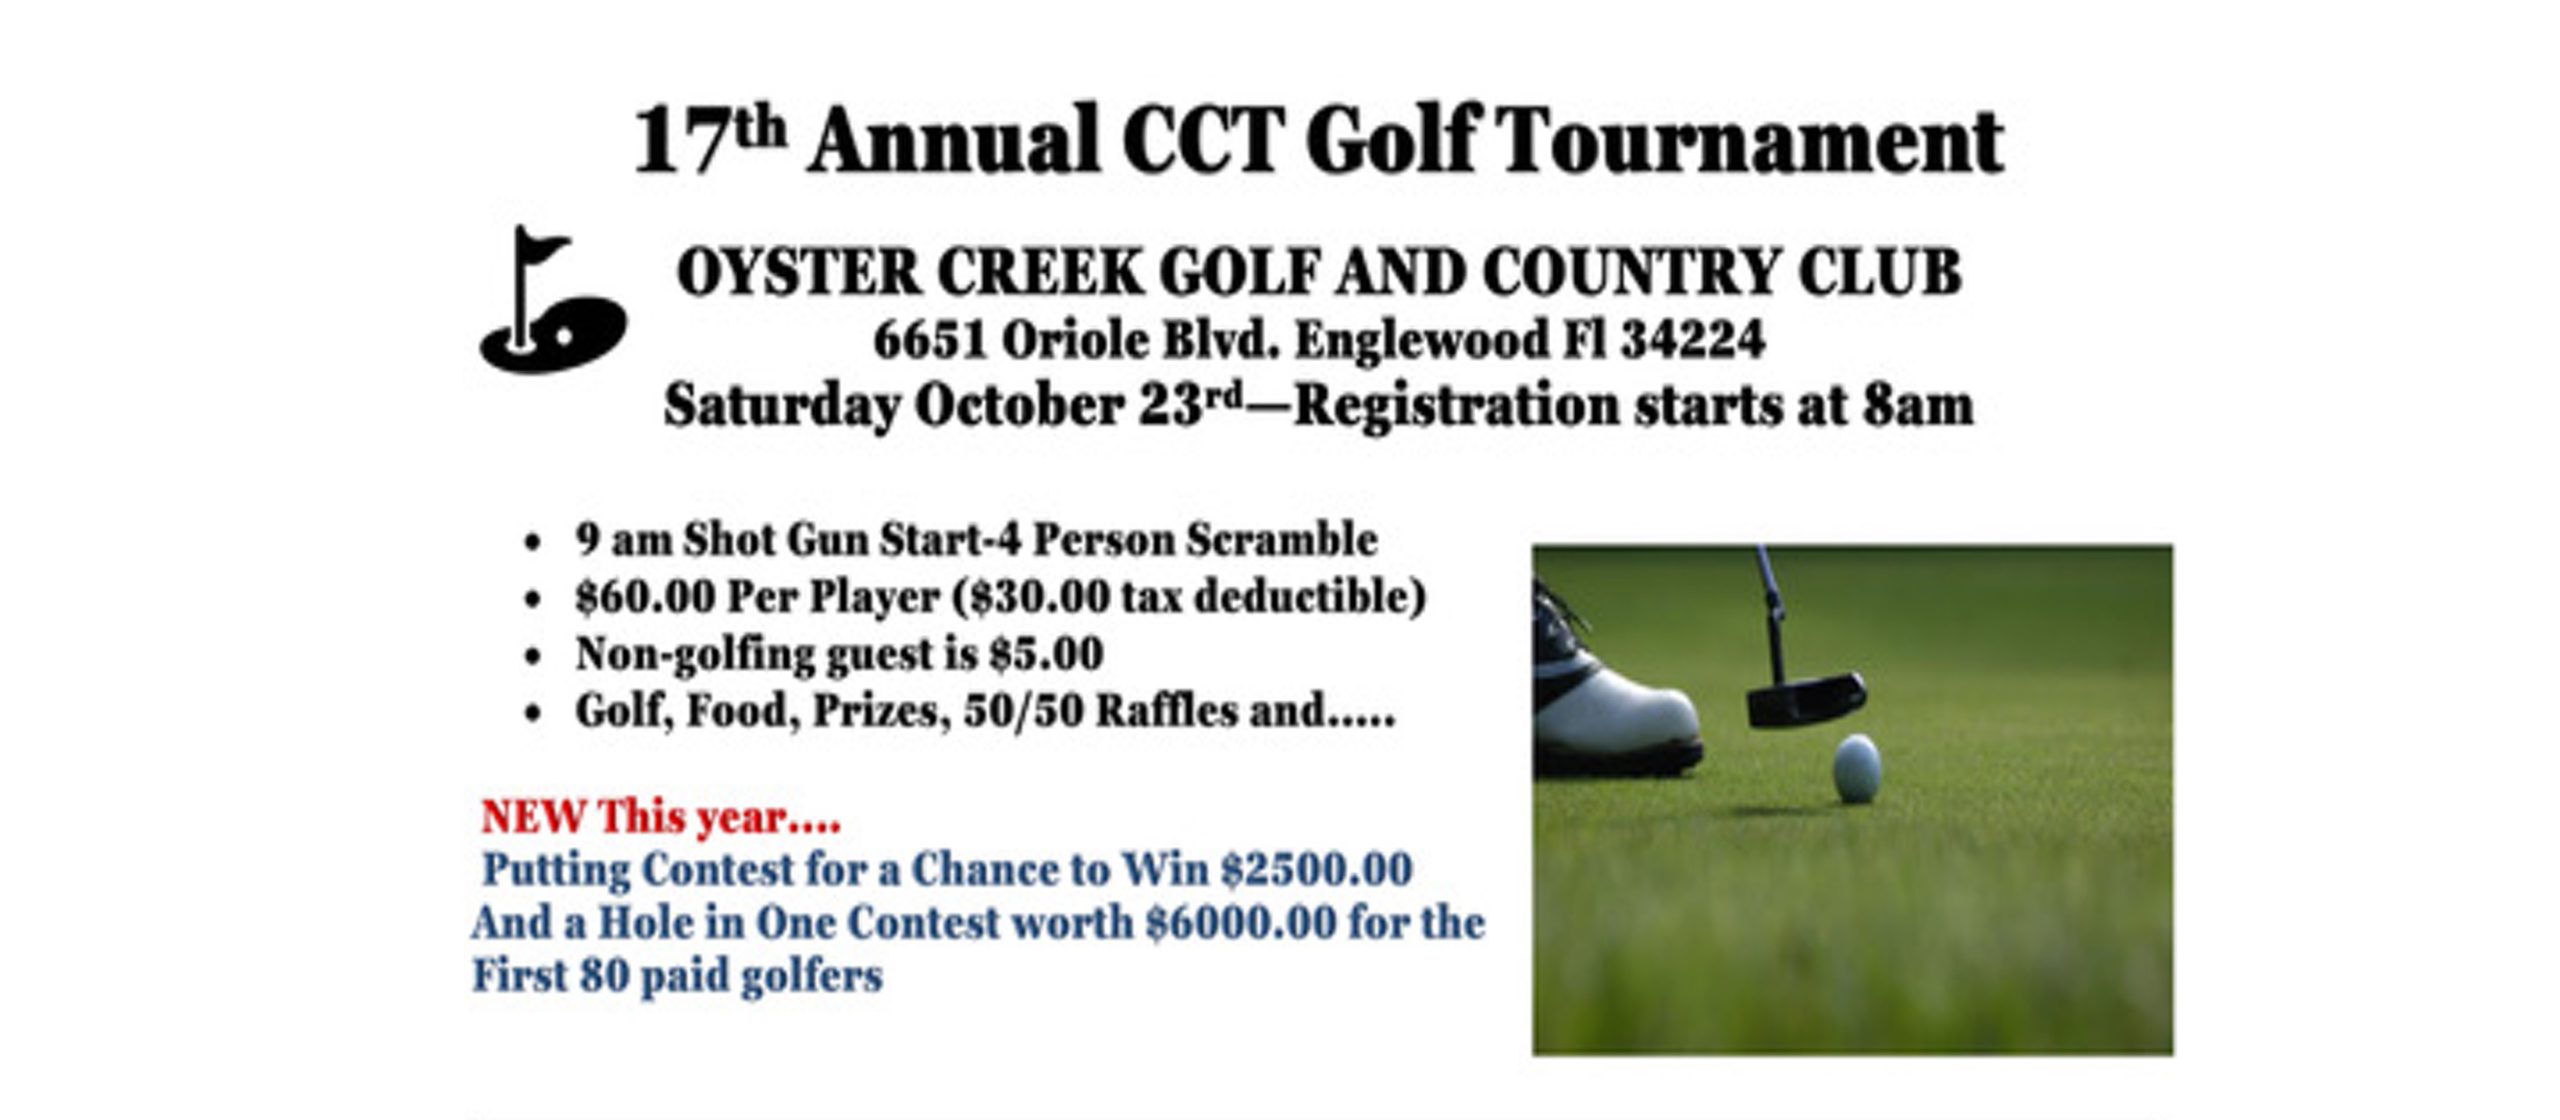 17th Annual CCT Golf Tournament